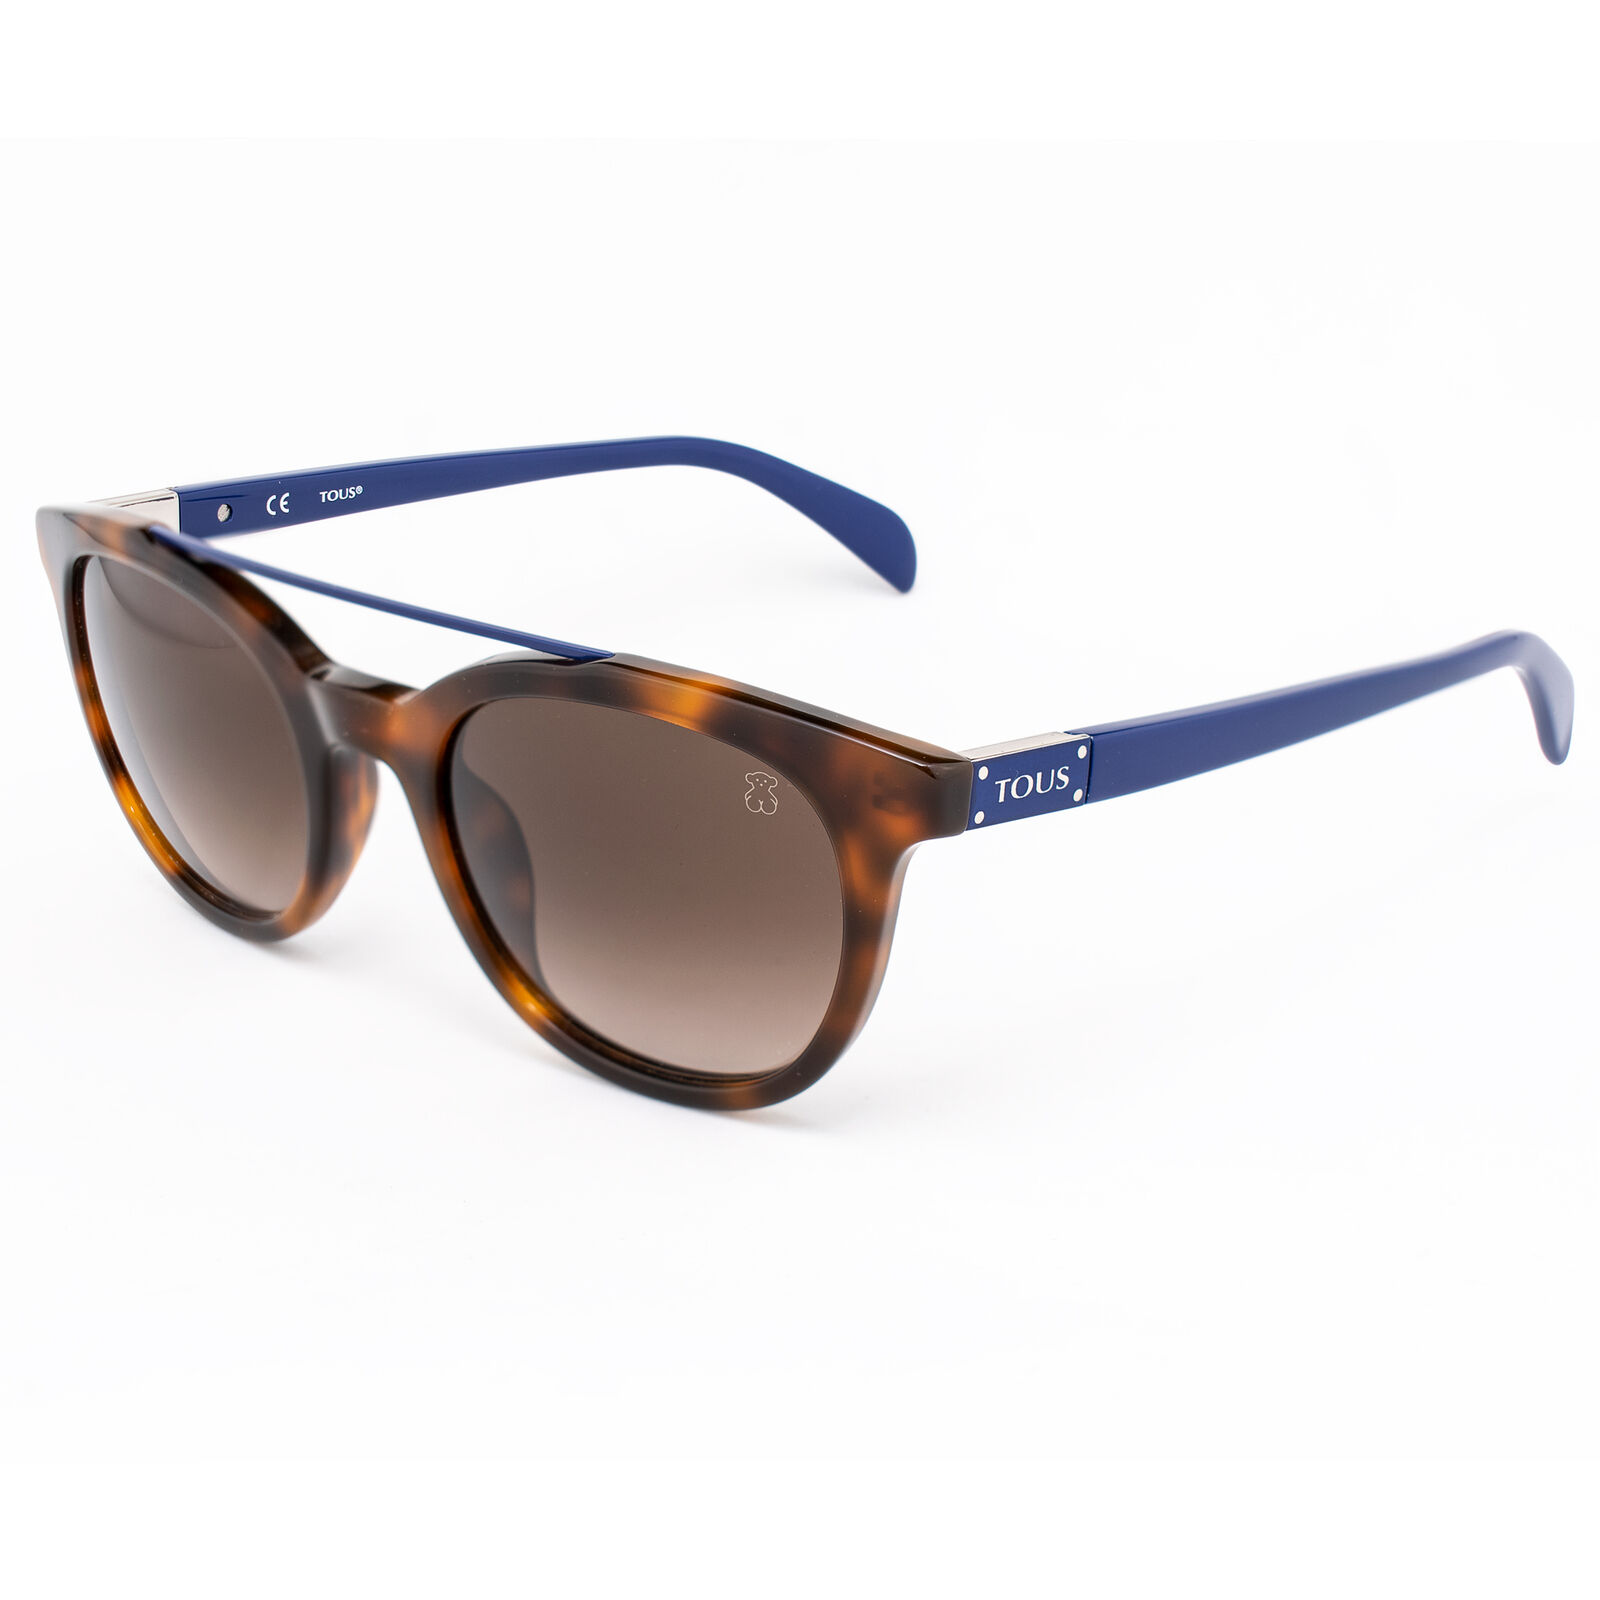 Sunglasses - Polarized Fashion Sun Glasses Tous Brown Women Sto952 